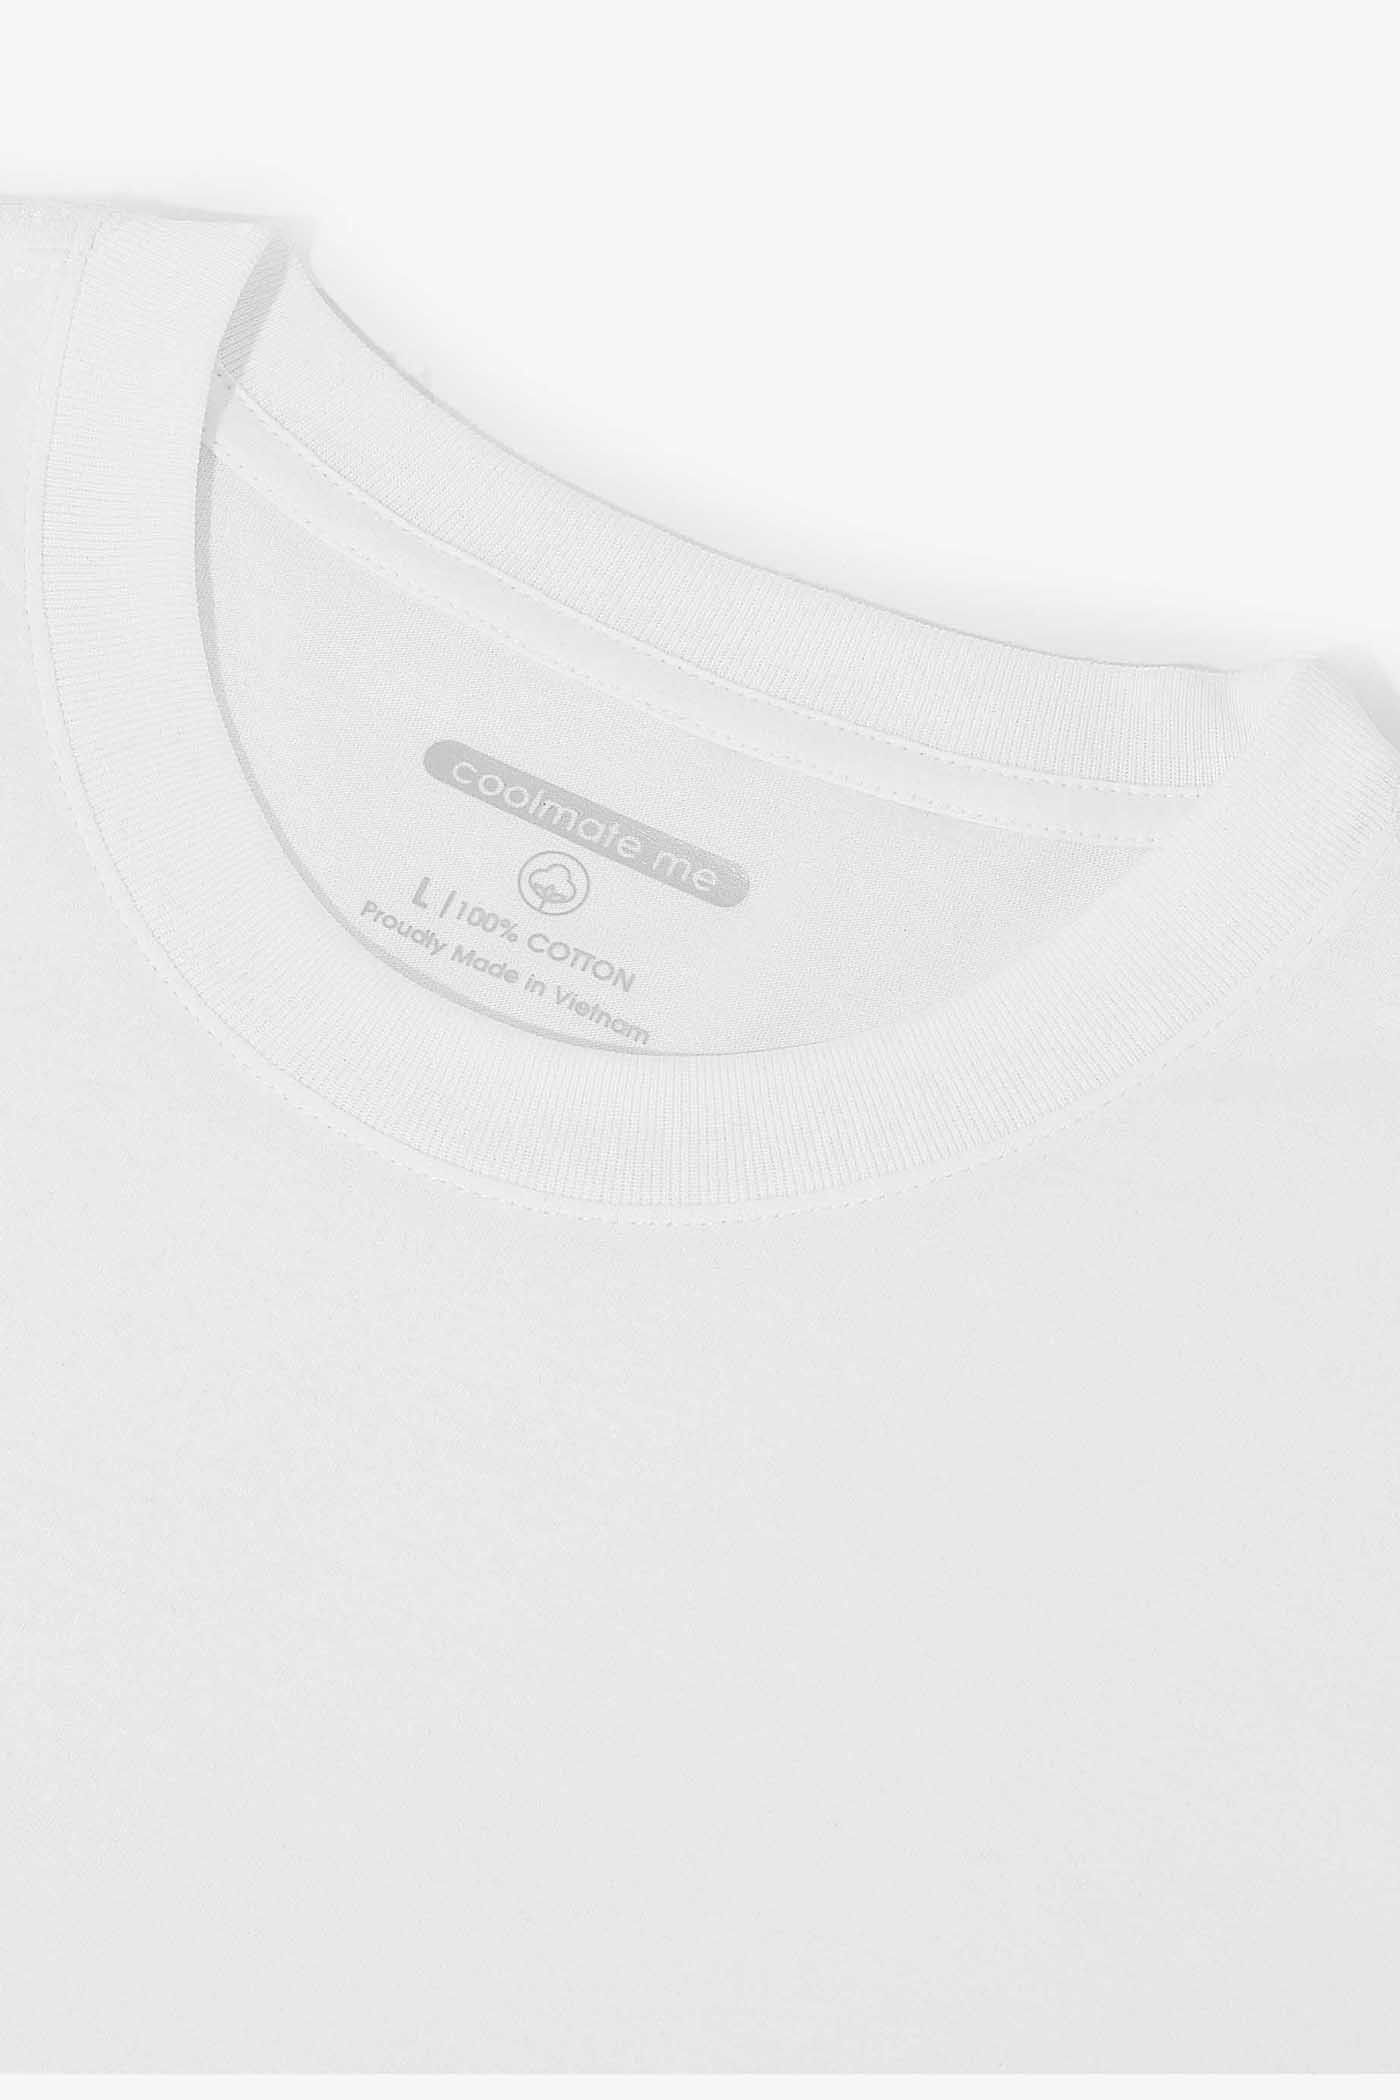 CXP - T-Shirt Cotton 200GSM  6